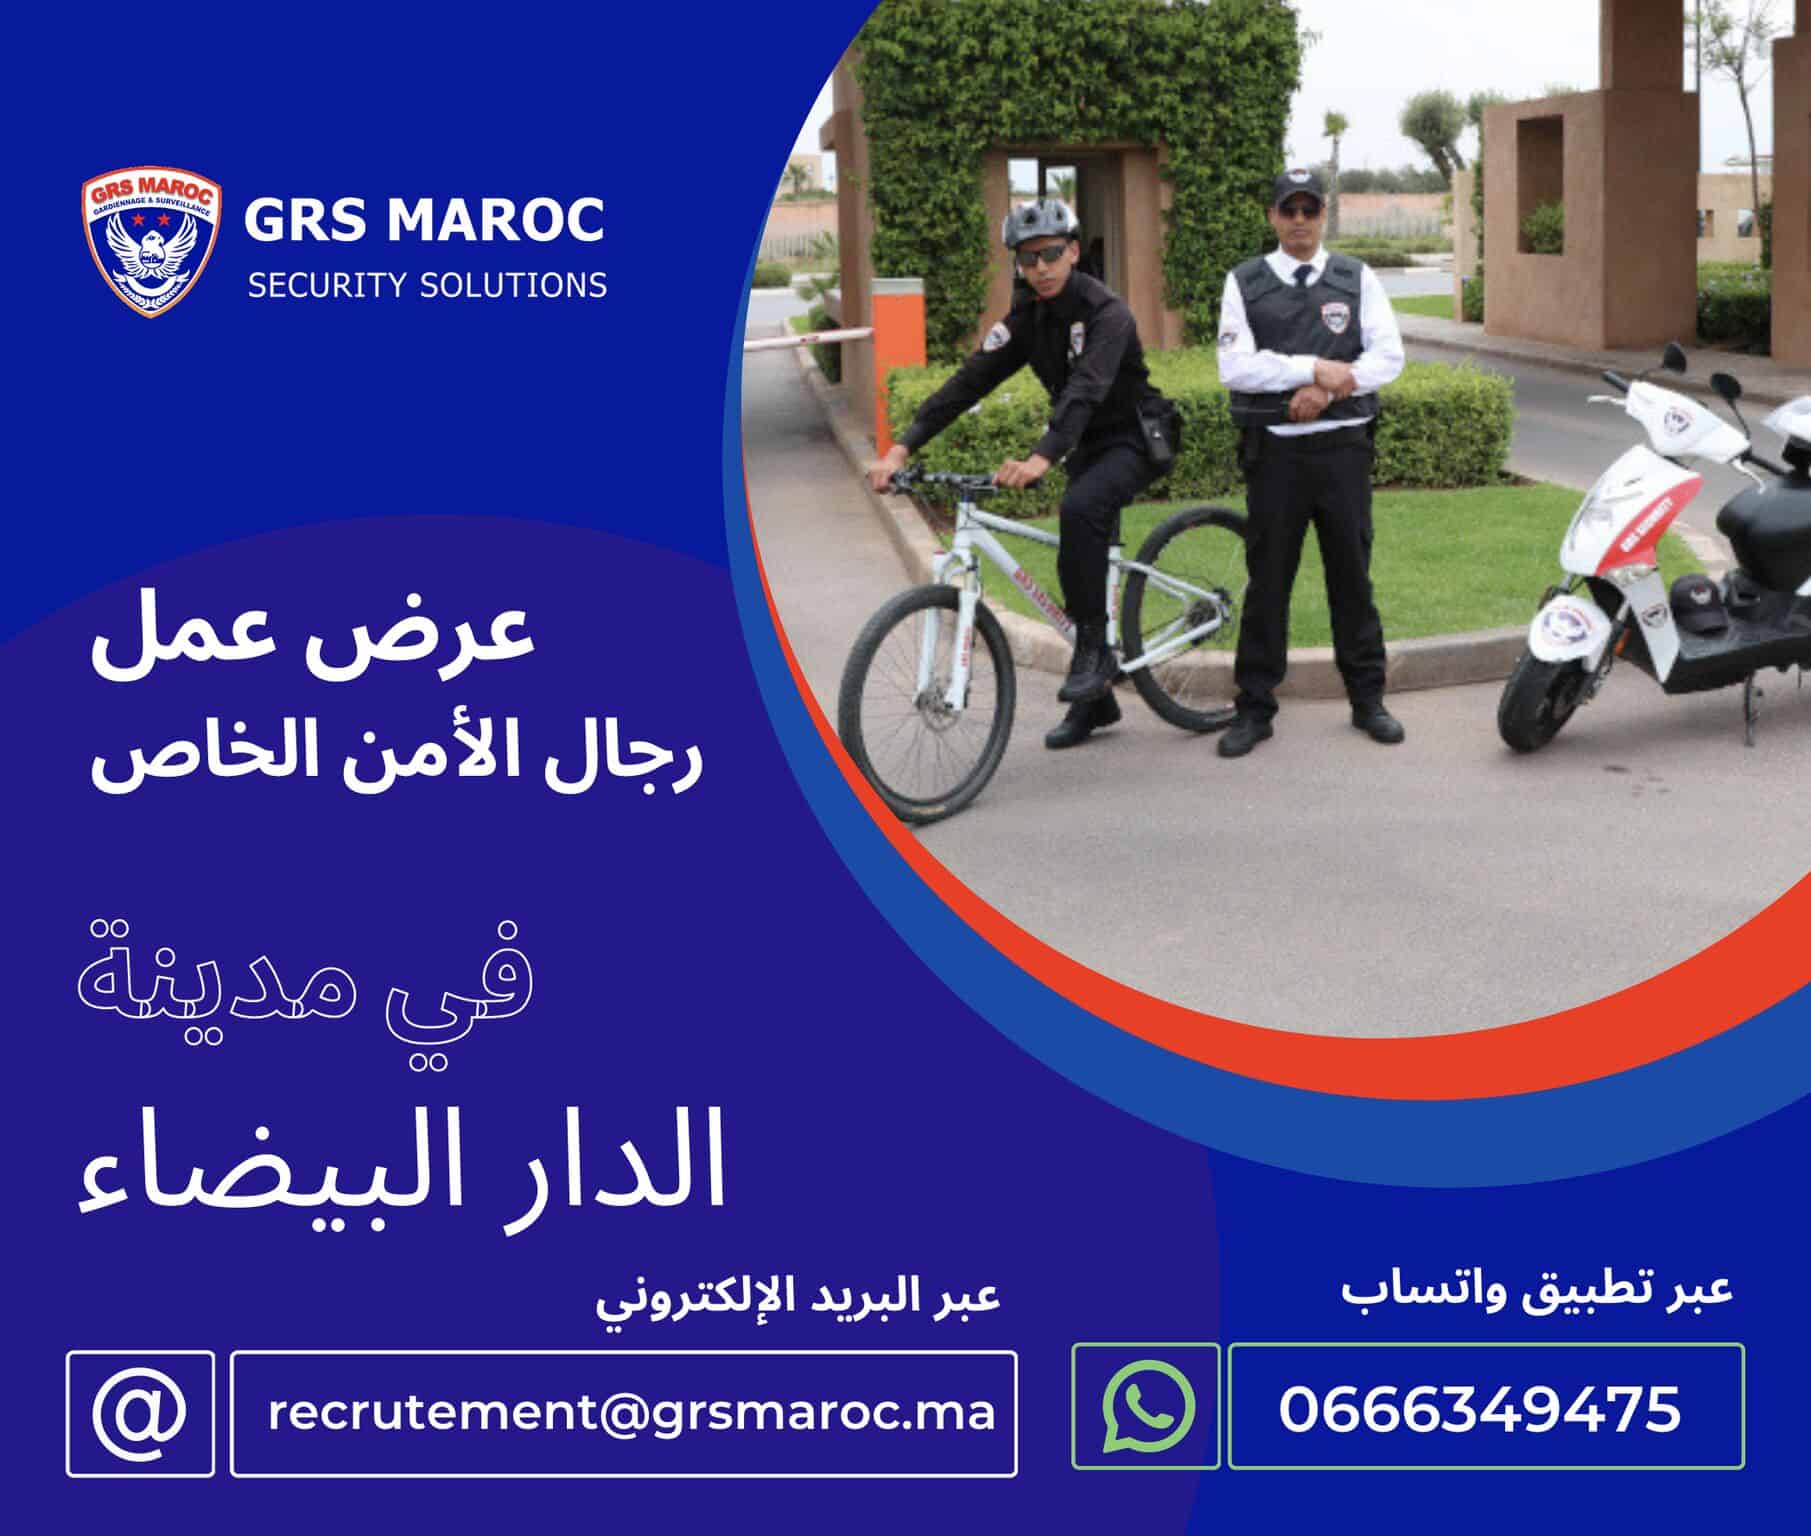 GRS Maroc recrute des Agents de Sécurité